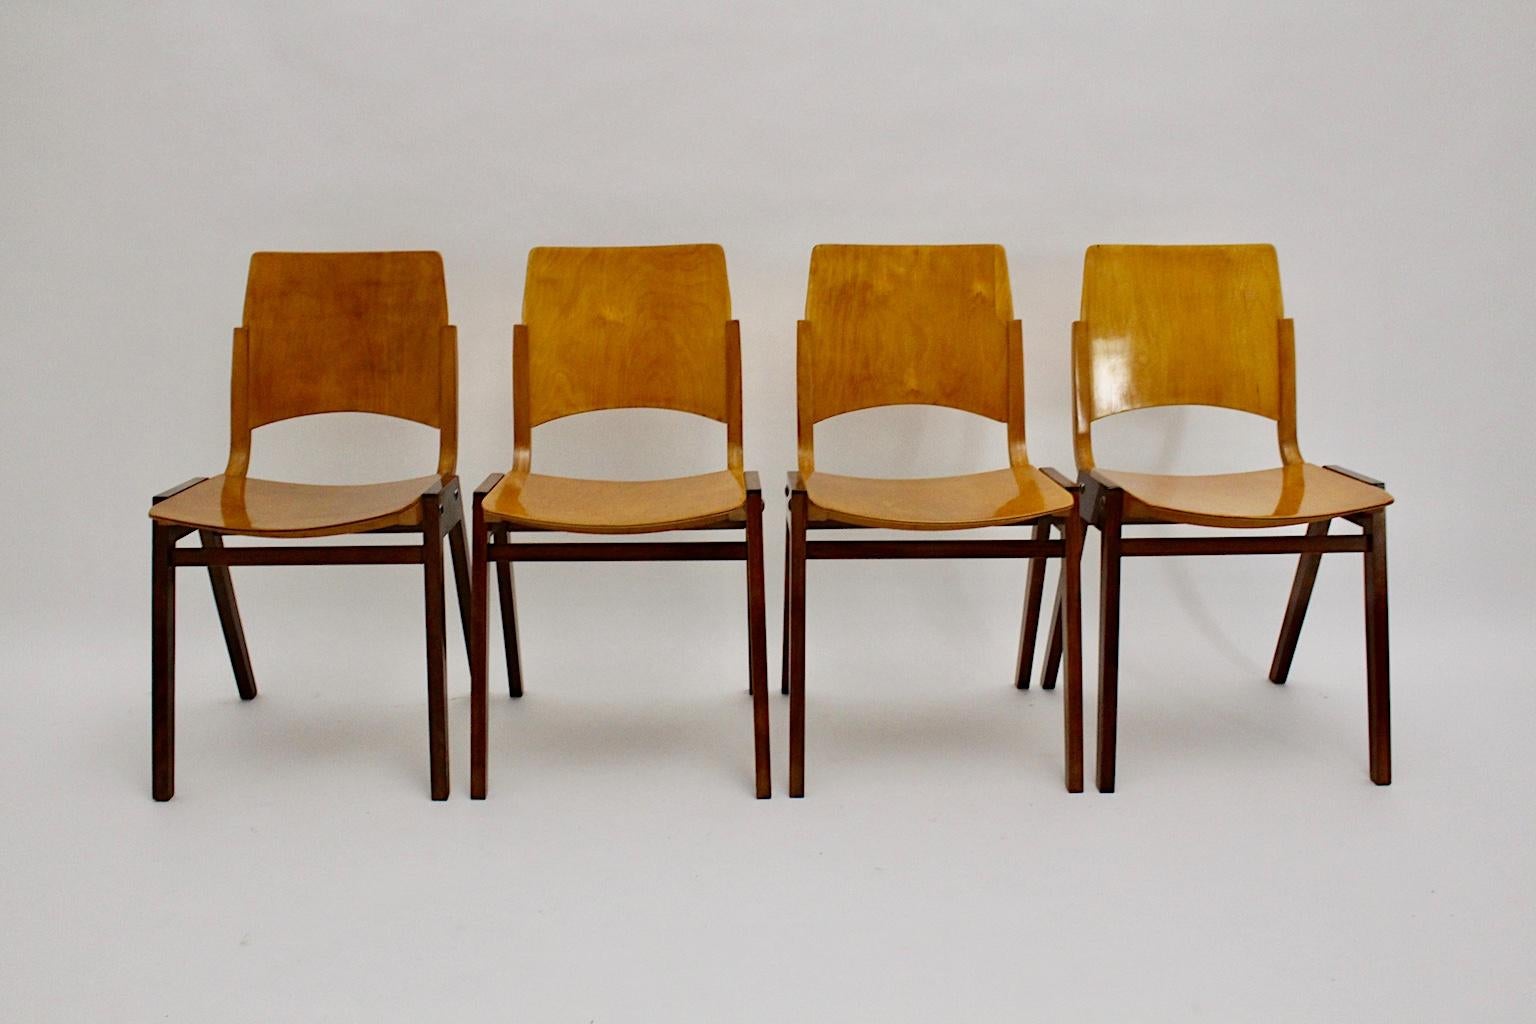 Mid Century Modern Satz von vier bicolor Esszimmerstühlen, die von Roland Rainer entworfen und von Emil & Alfred Pollak, Wien, ausgeführt wurden.
Die hier vorgestellten Esszimmerstühle wurden für den Backstage-Bereich des Wiener Rathauses (erbaut